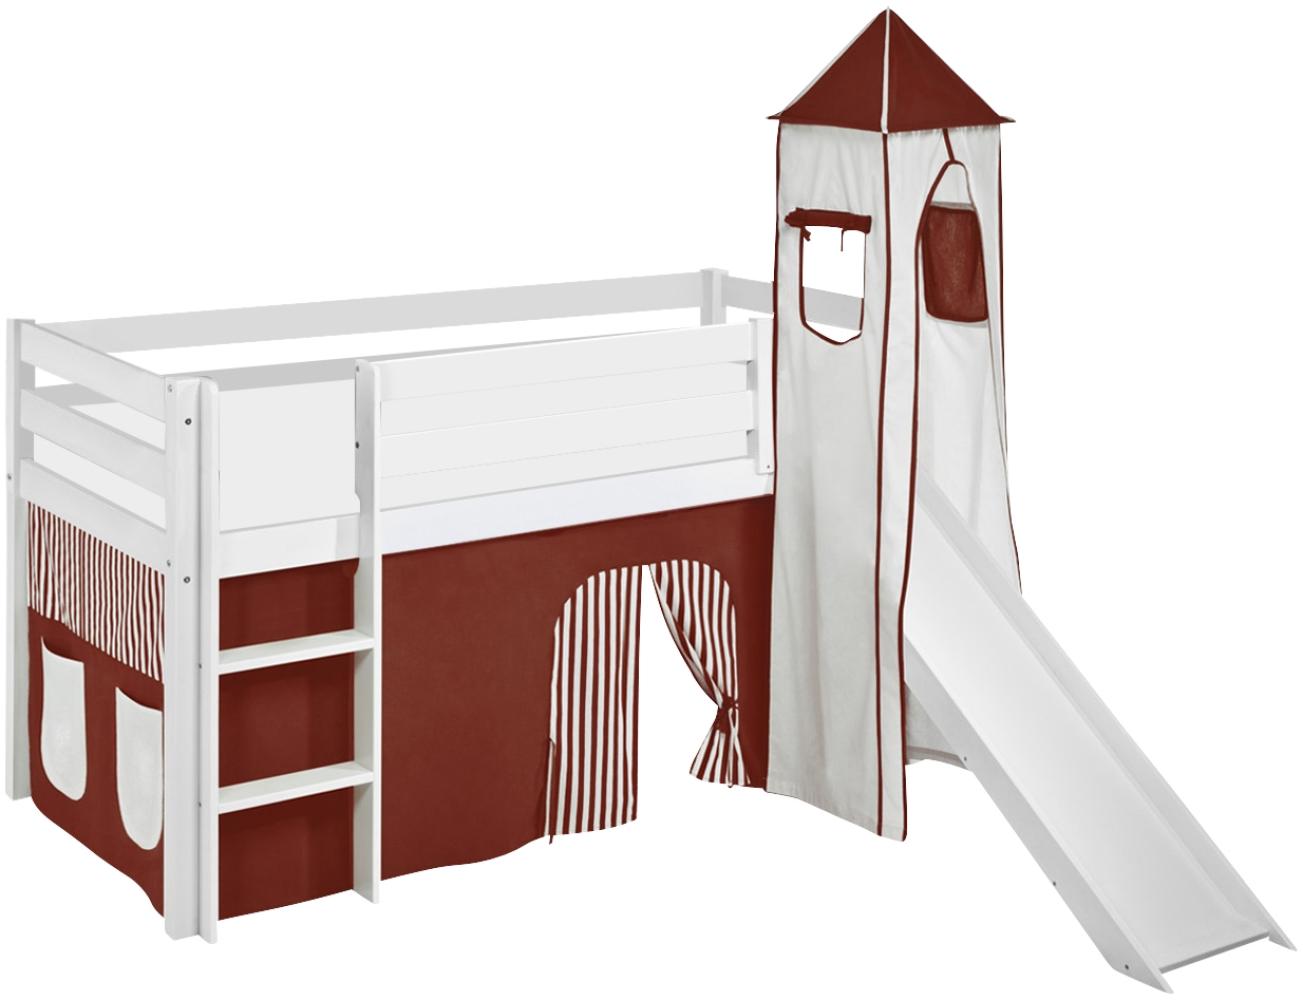 Lilokids 'Jelle' Spielbett 90 x 190 cm, Braun Beige, Kiefer massiv, mit Turm, Rutsche und Vorhang Bild 1